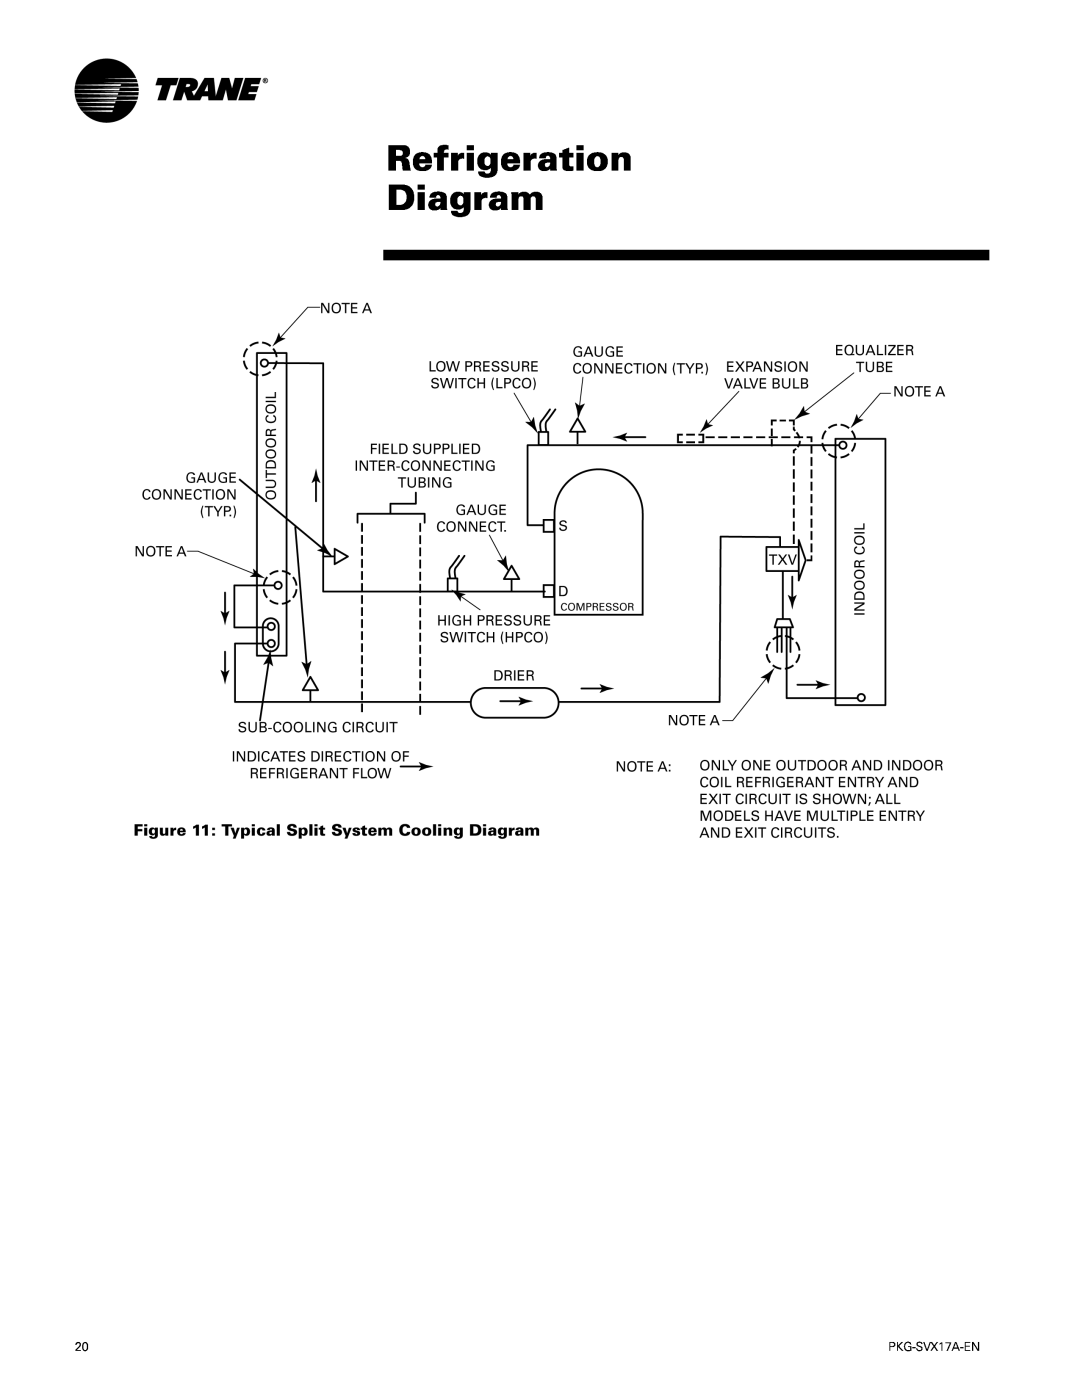 Trane PKG-SVX17A-EN manual Refrigeration Diagram, Typical Split System Cooling Diagram 